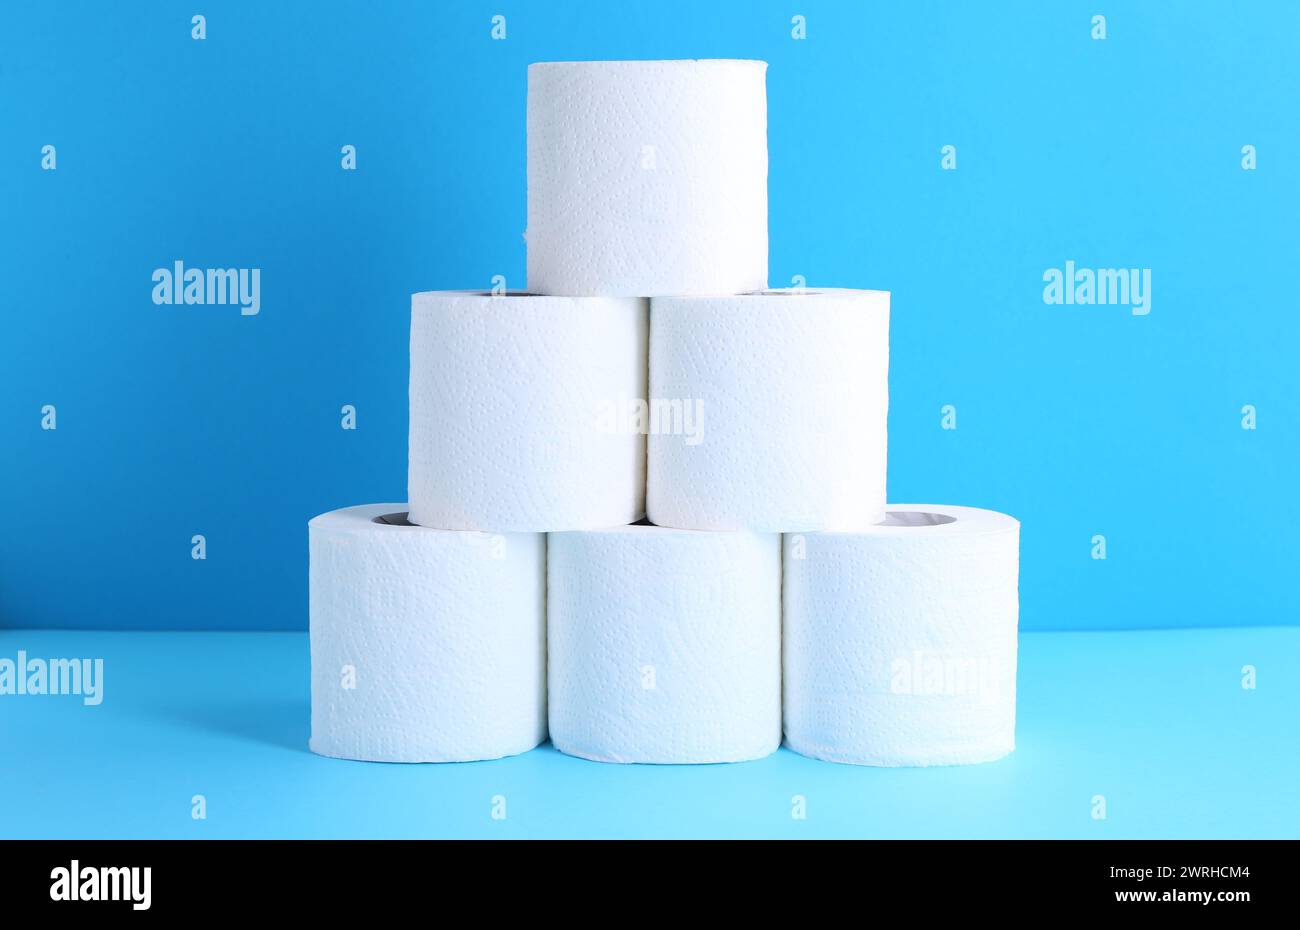 Pyramide de rouleaux de papier toilette sur fond bleu clair Banque D'Images